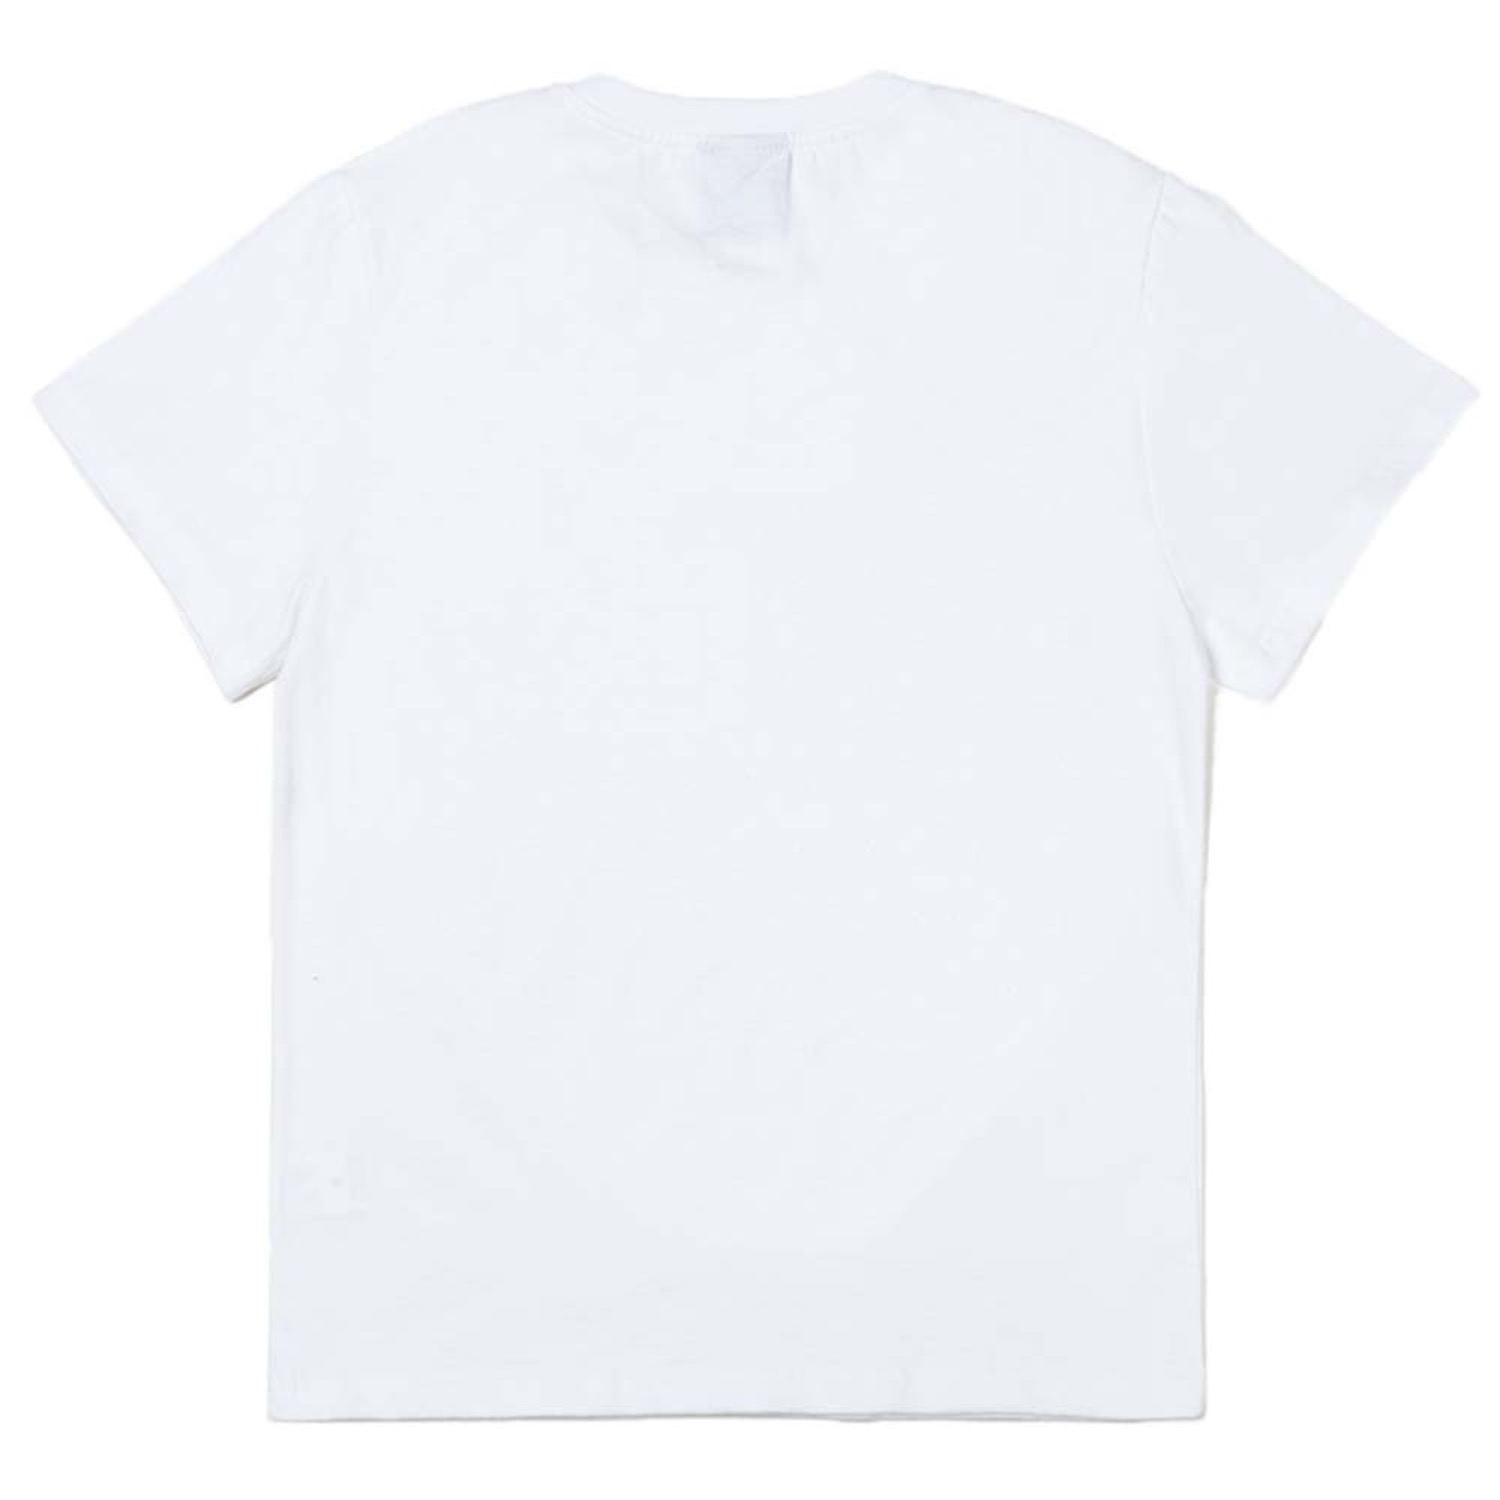 한글 스마일 반팔 티셔츠 화이트 Korean smile Standard-fit short sleeve T-shirts (White)